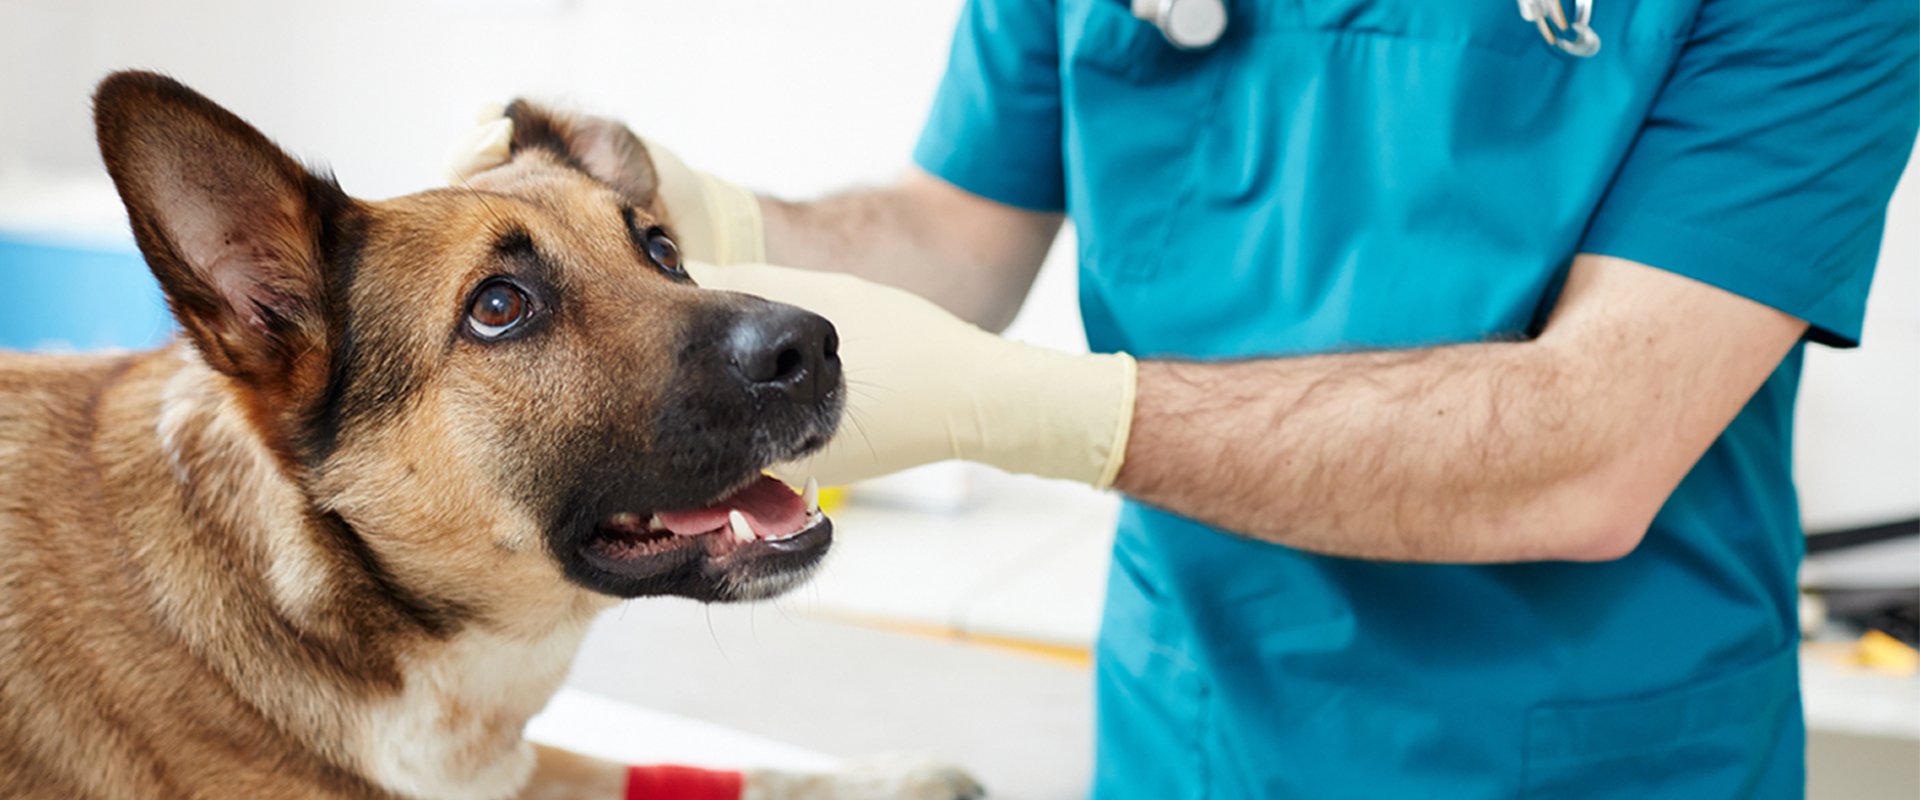 clinica veterinaria granero rojo perro